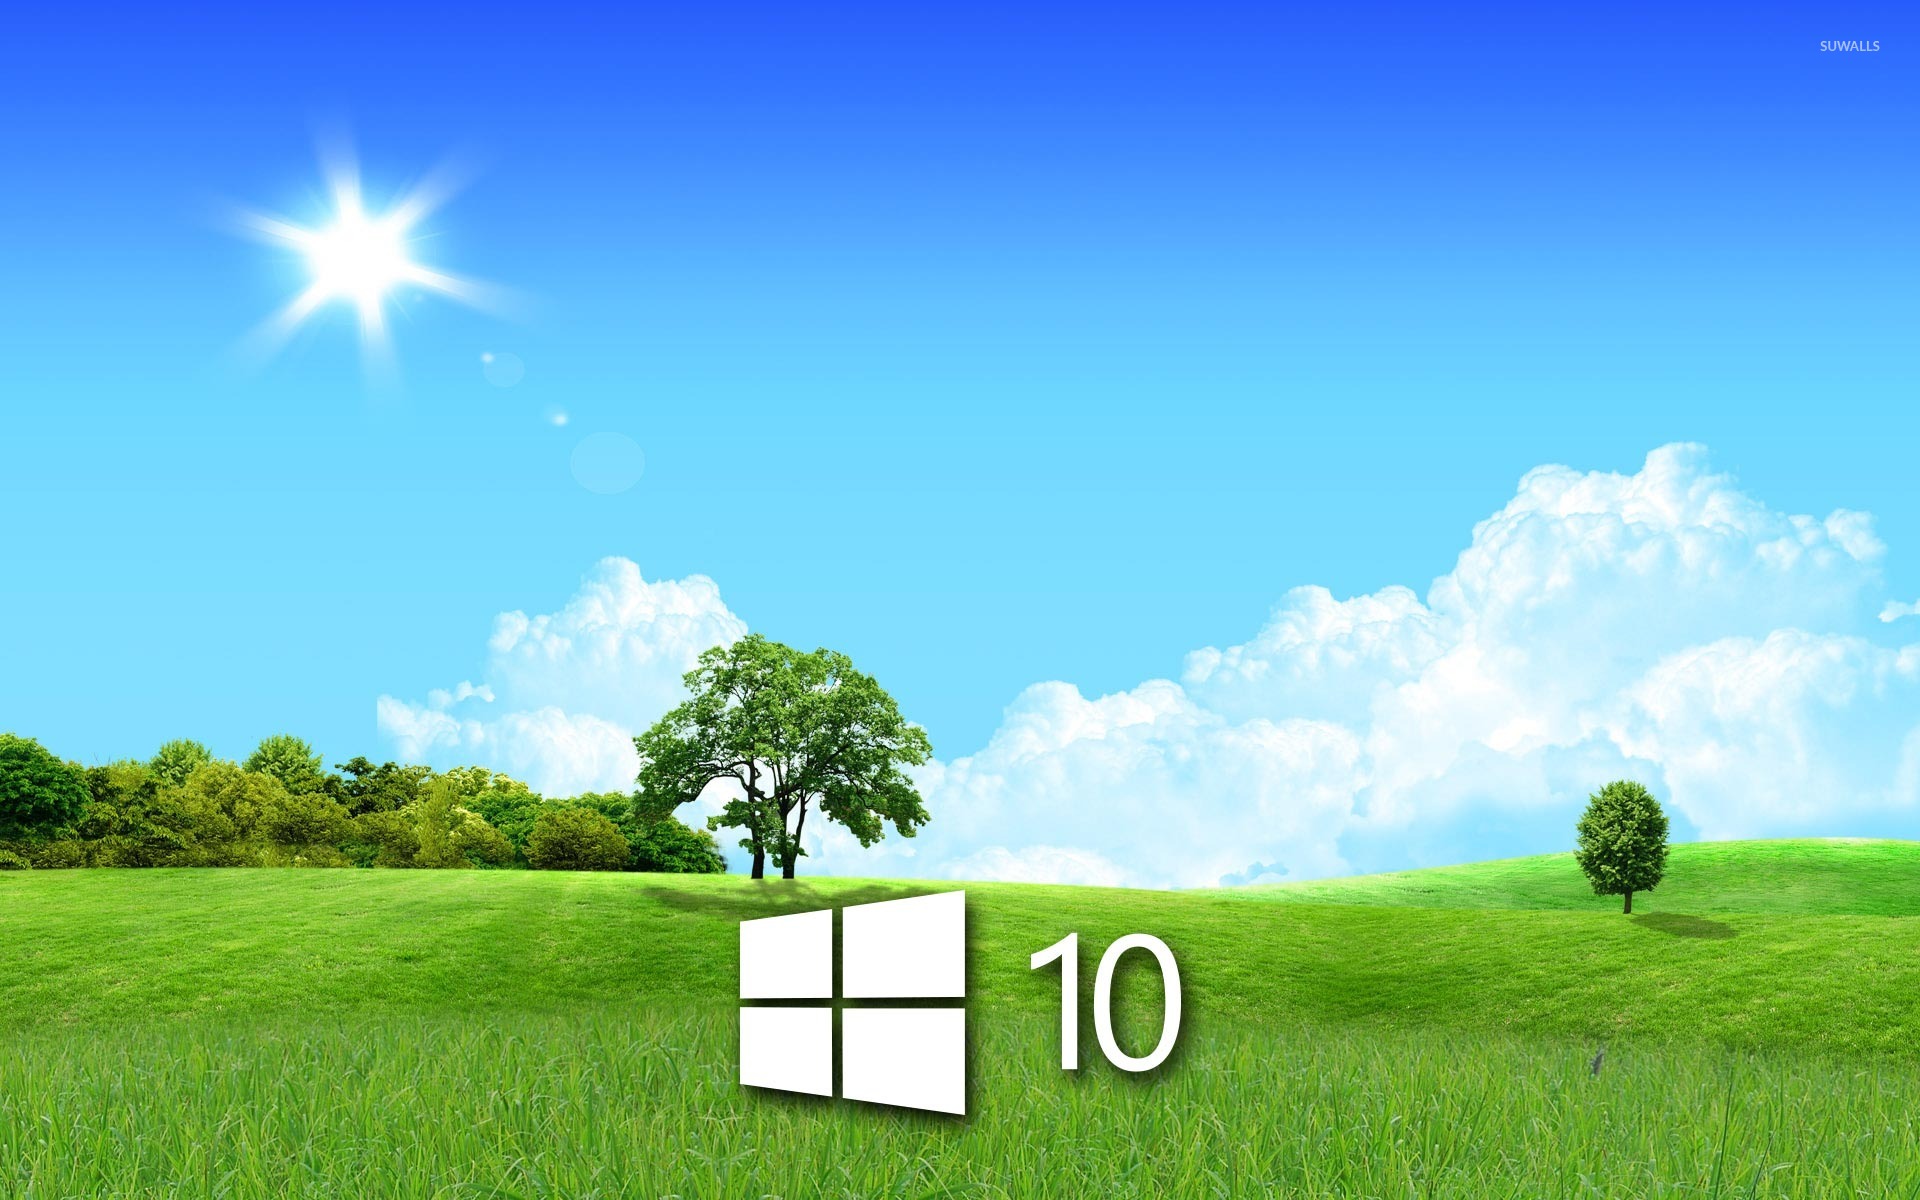 Картинки виндовс 10. Изображения для рабочего стола Windows 10. Обои виндовс 10. Фоновые рисунки Windows 10. Картинки на рабочий стол виндовс 10.